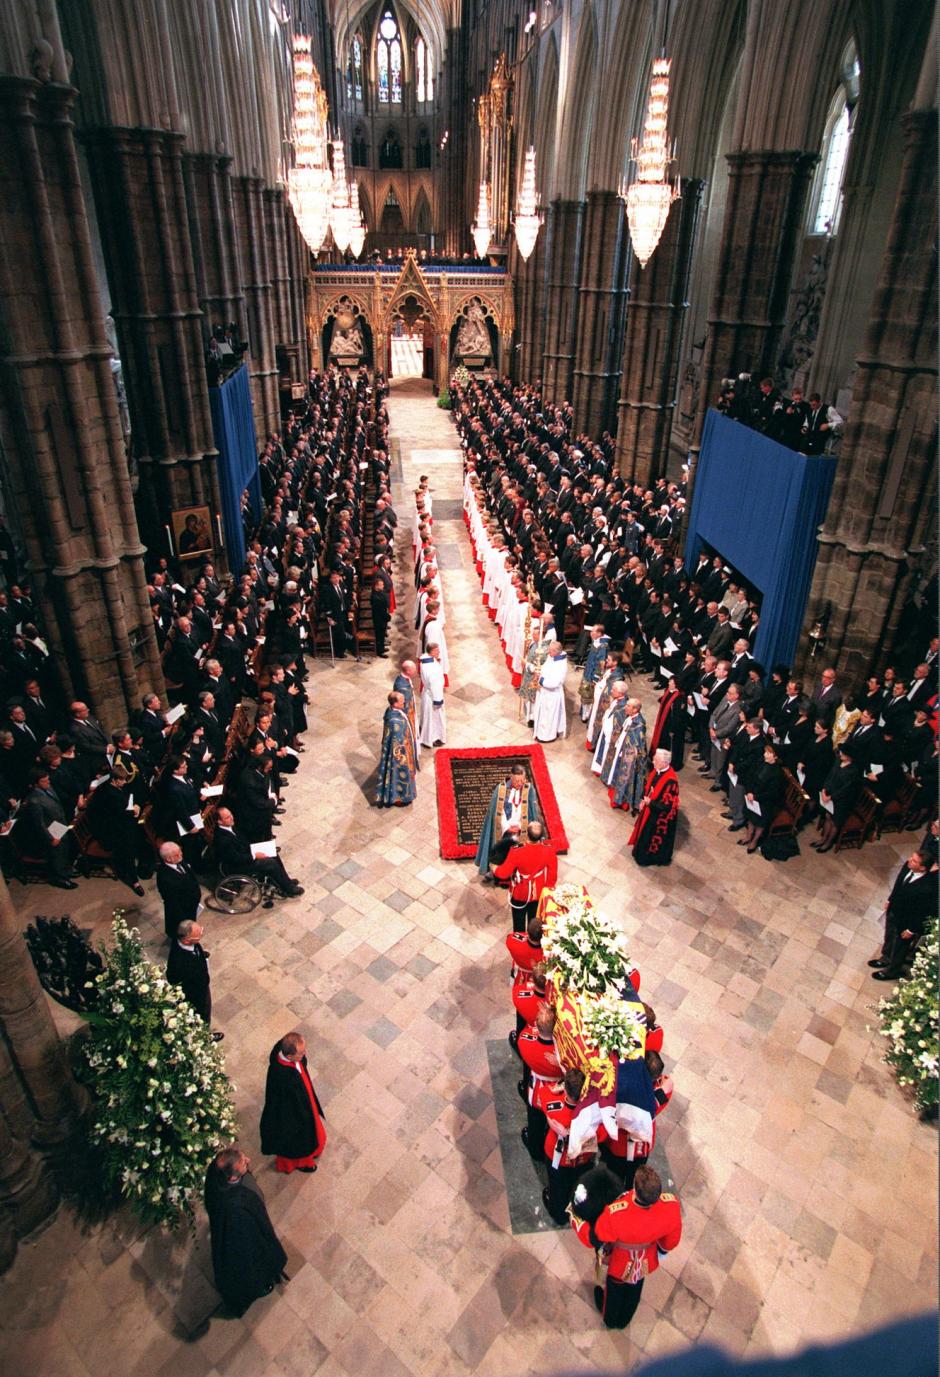 1997: el funeral de Diana - Isabel II fue muy criticada por su aparente frialdad tras la muerte de la princesa Diana en un accidente de coche en 1997 en París. Pese a los escándalos en su relación y su divorcio en 1996, el príncipe Carlos insistió para que su cuerpo fuera repatriado. Se le rindieran honores en la Abadía de Westminster el 6 de septiembre. Casi un millón de personas se agolparon en las calles de Londres y unos 2.500 millones siguieron el funeral por televisión. - 2002: el funeral de la reina madre - El funeral de la reina madre Isabel, el 9 de abril de 2002, marcó el fin de una era. A sus 101 años, fue la última emperatriz de la India. Más de 200.000 personas acudieron para presentar respetos ante su féretro. El fallecimiento de su madre, solo dos meses después del de su hermana Margarita, provocó un alud de mensajes de condolencias y simpatías hacia la reina, tras años de baja popularidad como consecuencia de su criticada reacción a la muerte de Diana.